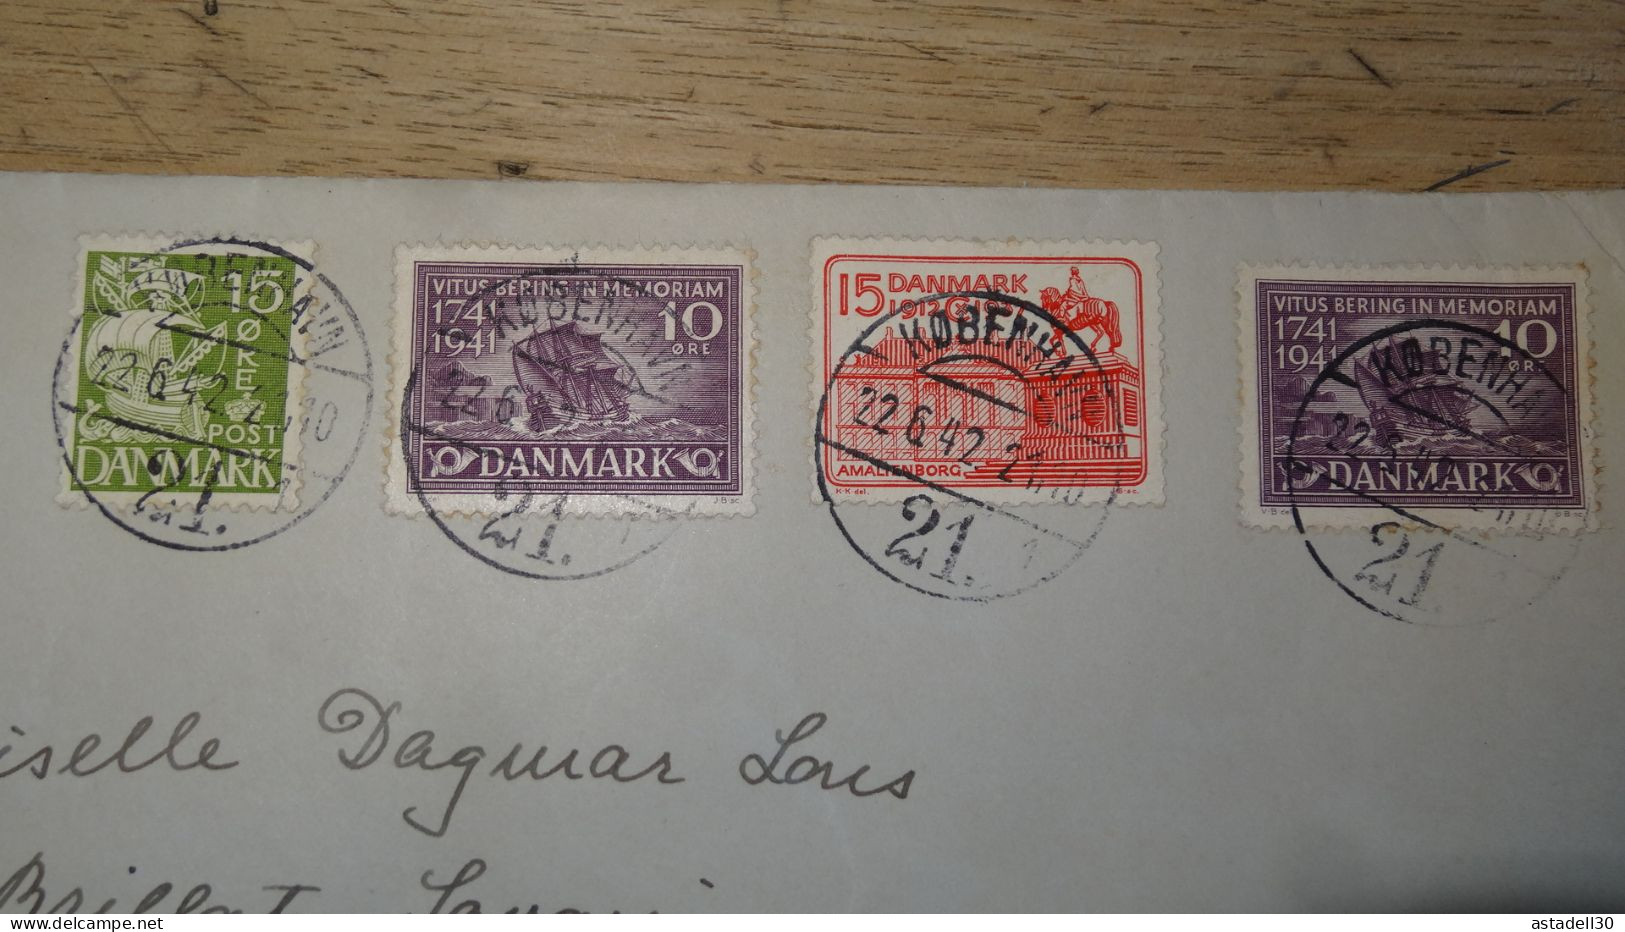 Grande Enveloppe DANEMARK, Avec Censure - 1942 .......... 240424......... CL9-57a - Covers & Documents